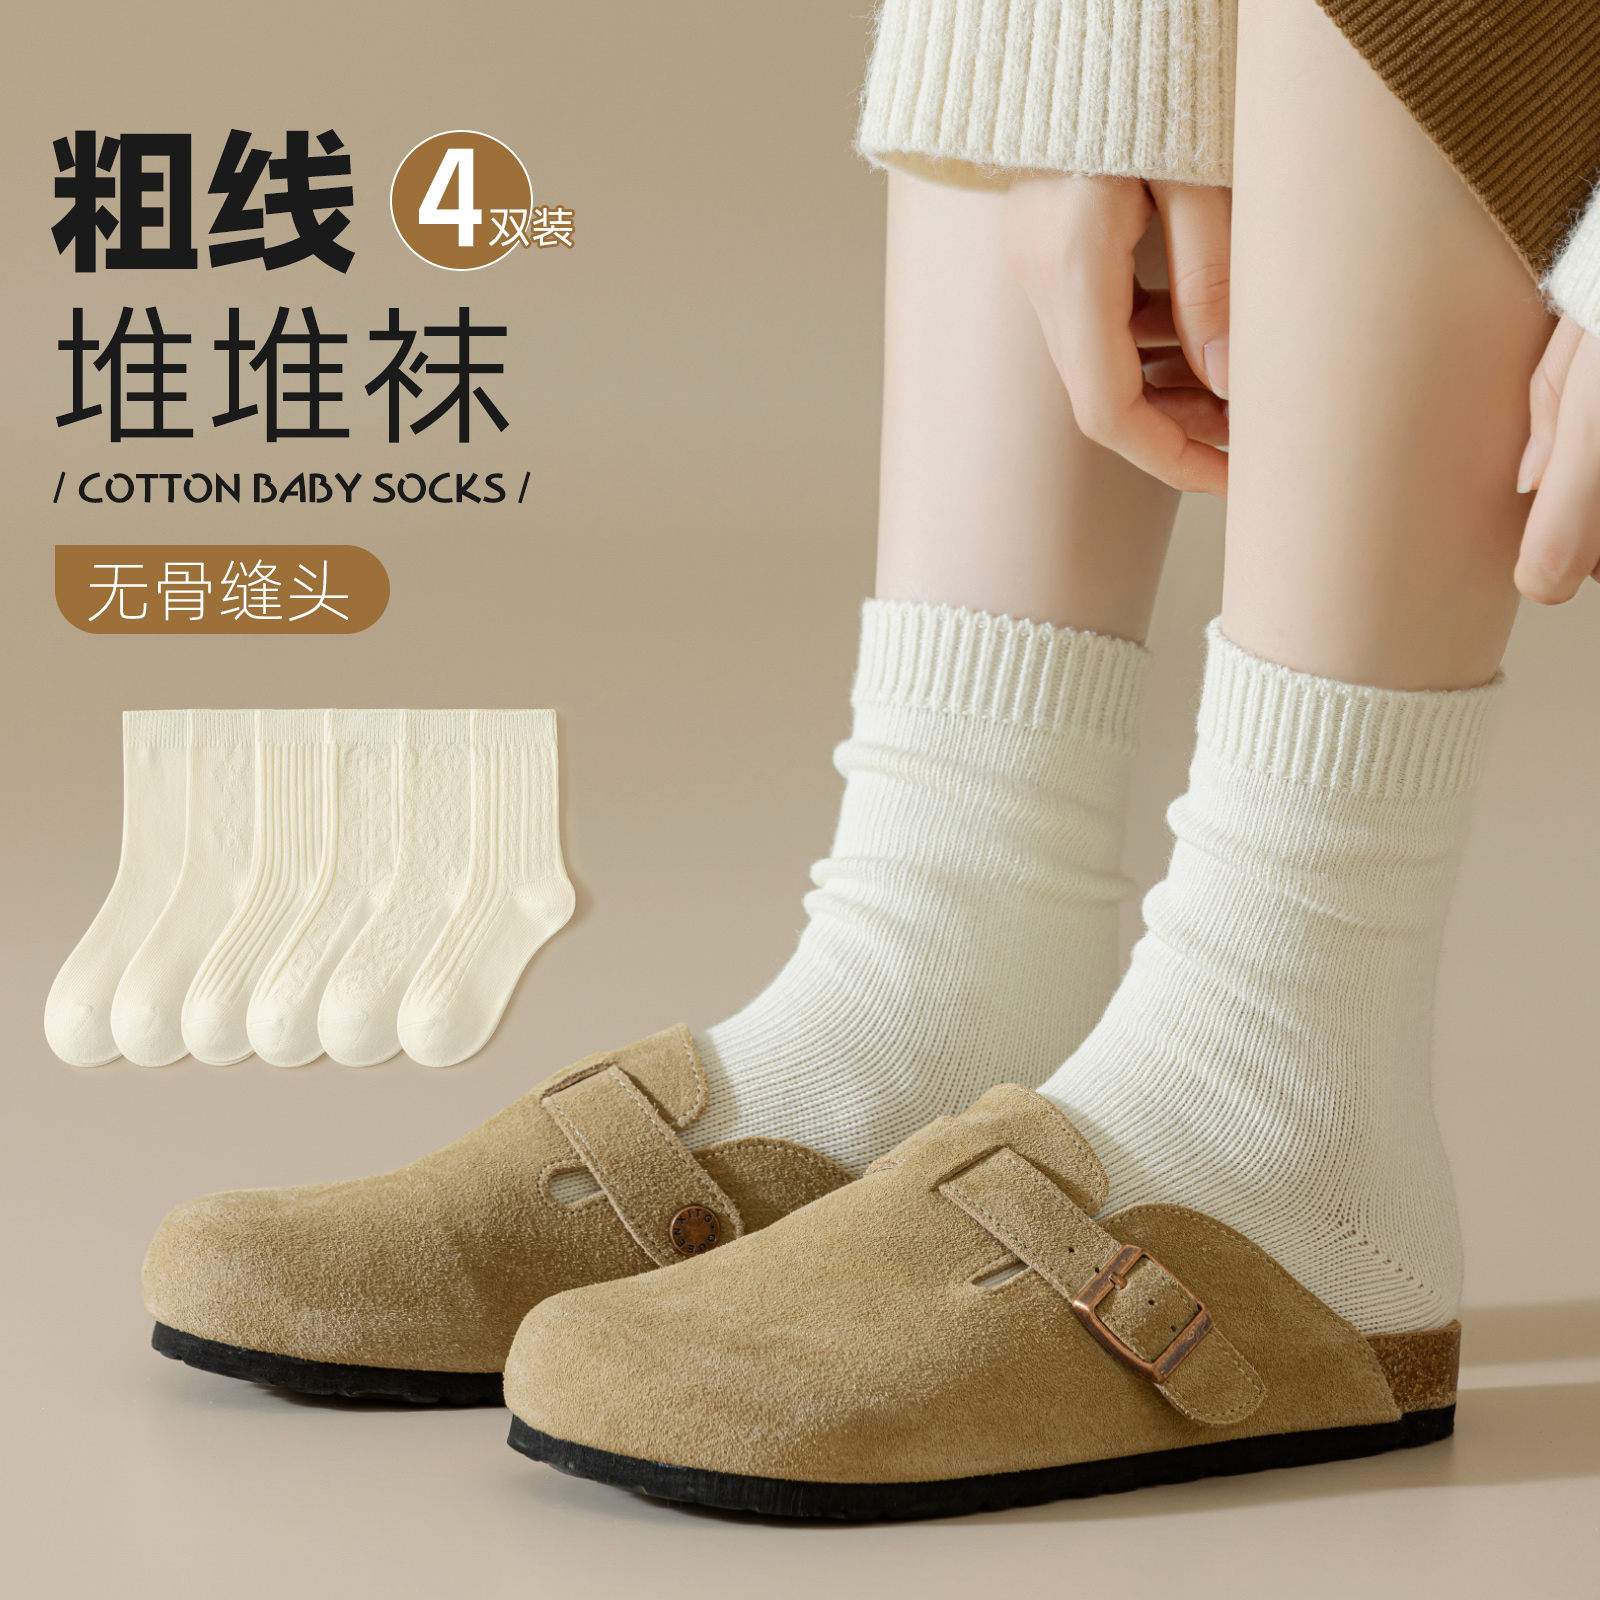 袜子女中筒袜纯棉白色粗线针织毛线堆堆袜保暖长筒长袜夏季 勃肯鞋